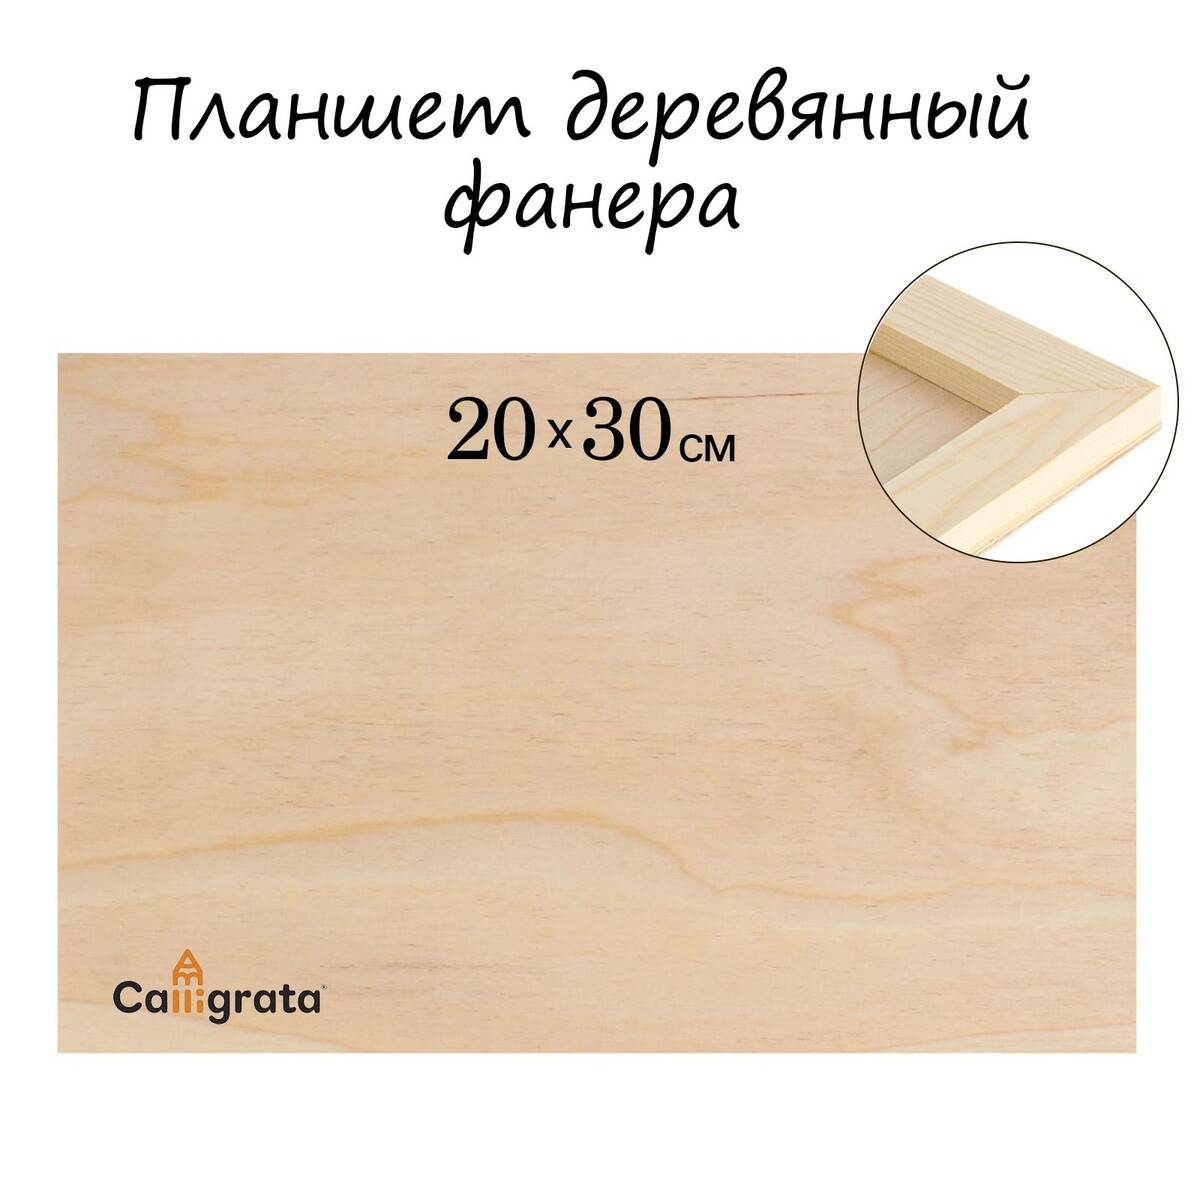 Планшет деревянный 20 х 30 х 2 см, фанера планшет деревянный с врезанной фанерой 30 х 40 х 3 5 см глубина 0 5 см сосна